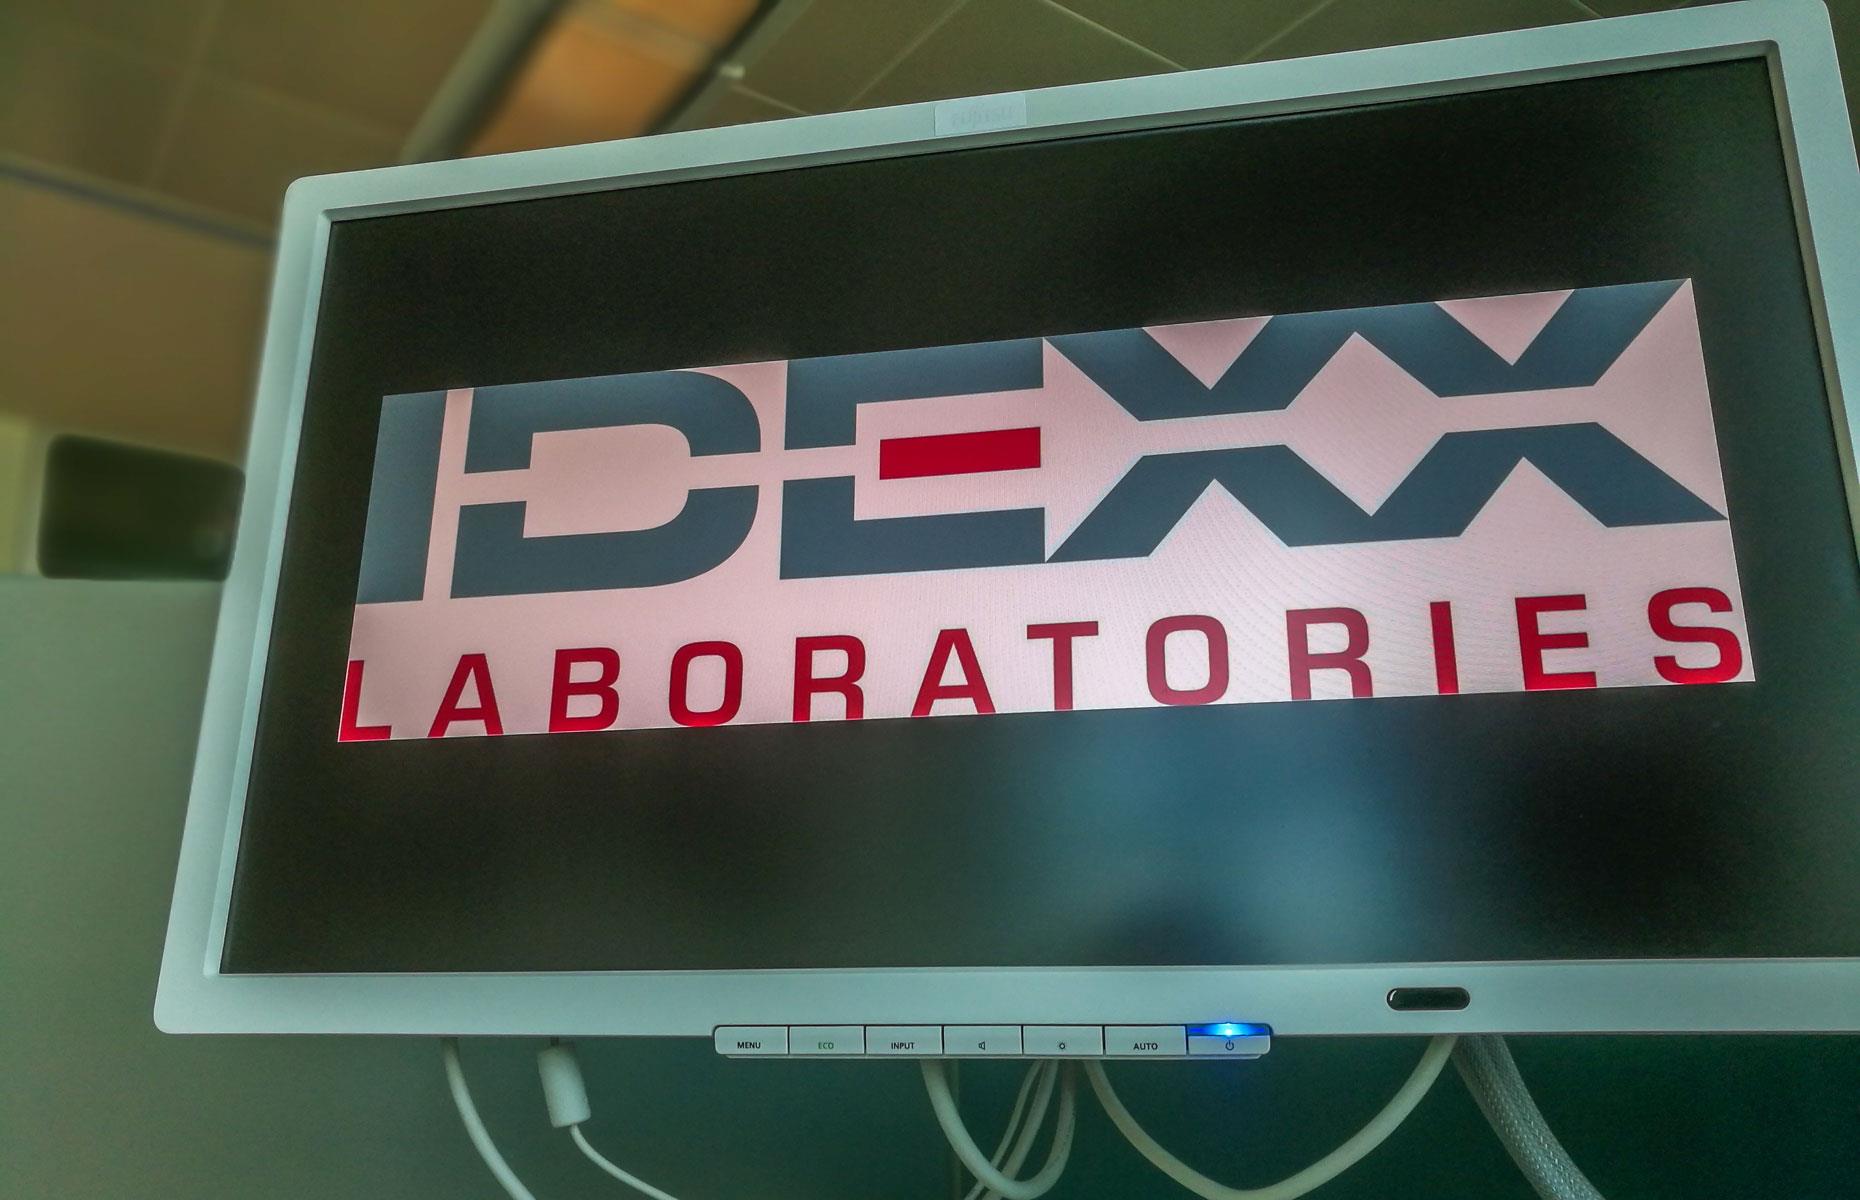 Maine: IDEXX Laboratories, valued at $32.47 billion (£24.8bn)